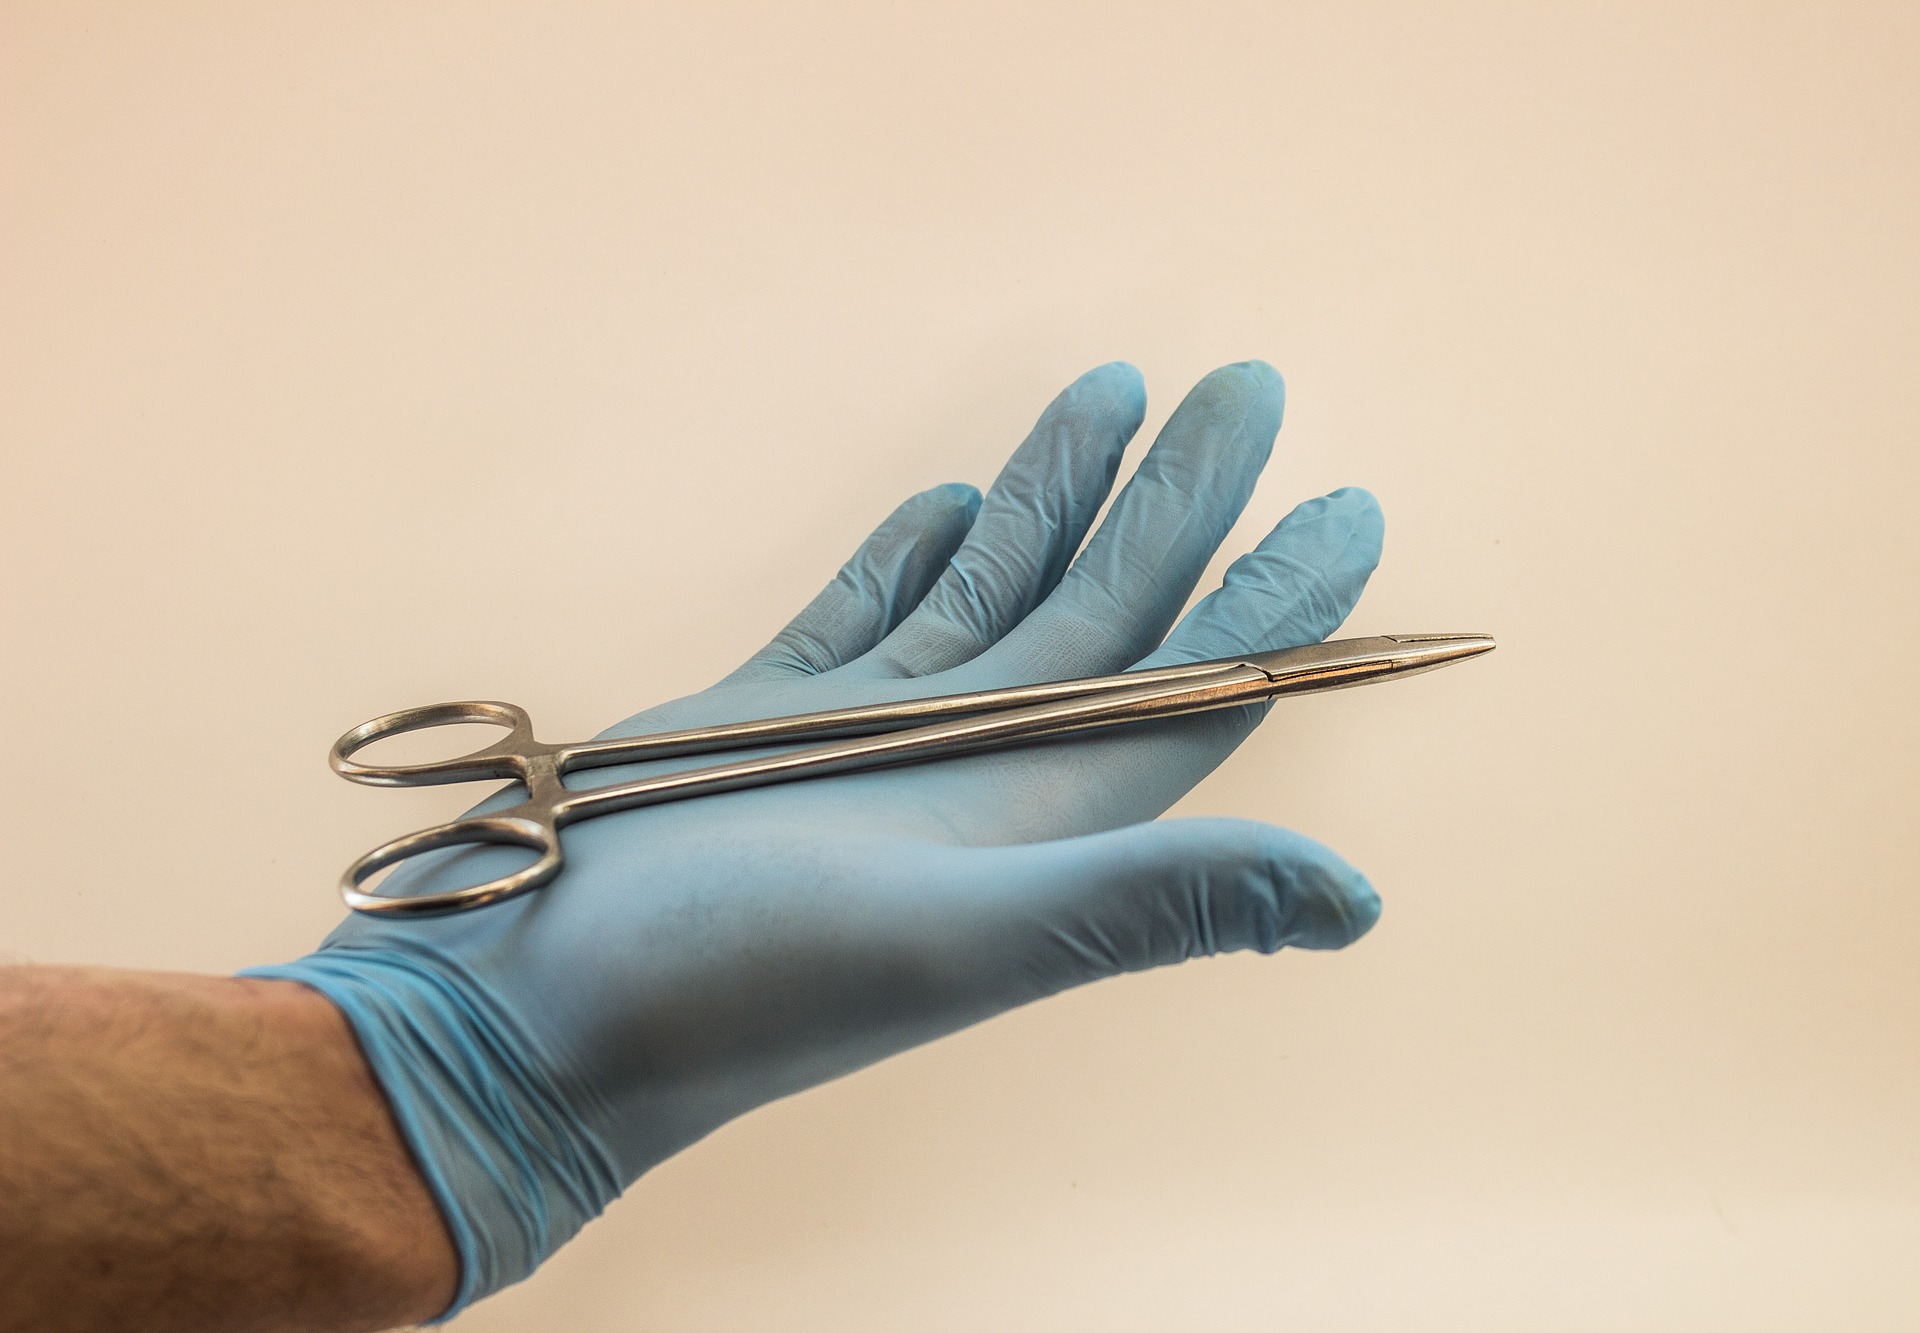 To czy chirurg wybiera narzędzia chirurgiczne wielorazowe czy jednokrotnego użytku często zależy od jego indywidualnych preferencji (Źródło: pixabay.com, Autor: ymkaaaaaa)